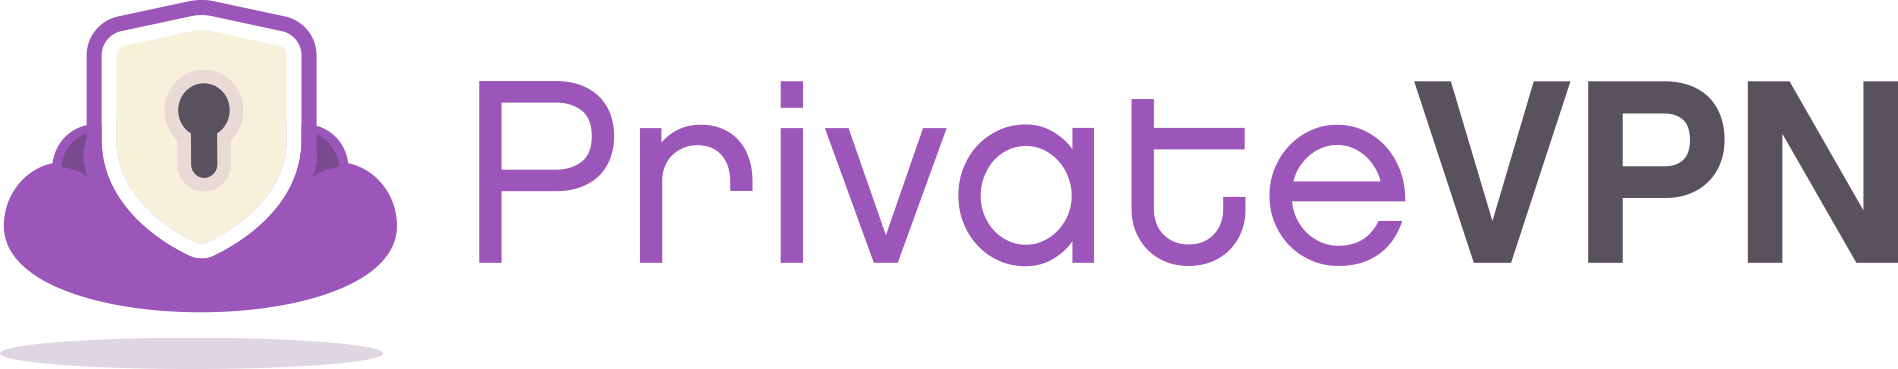 privatevpn logo